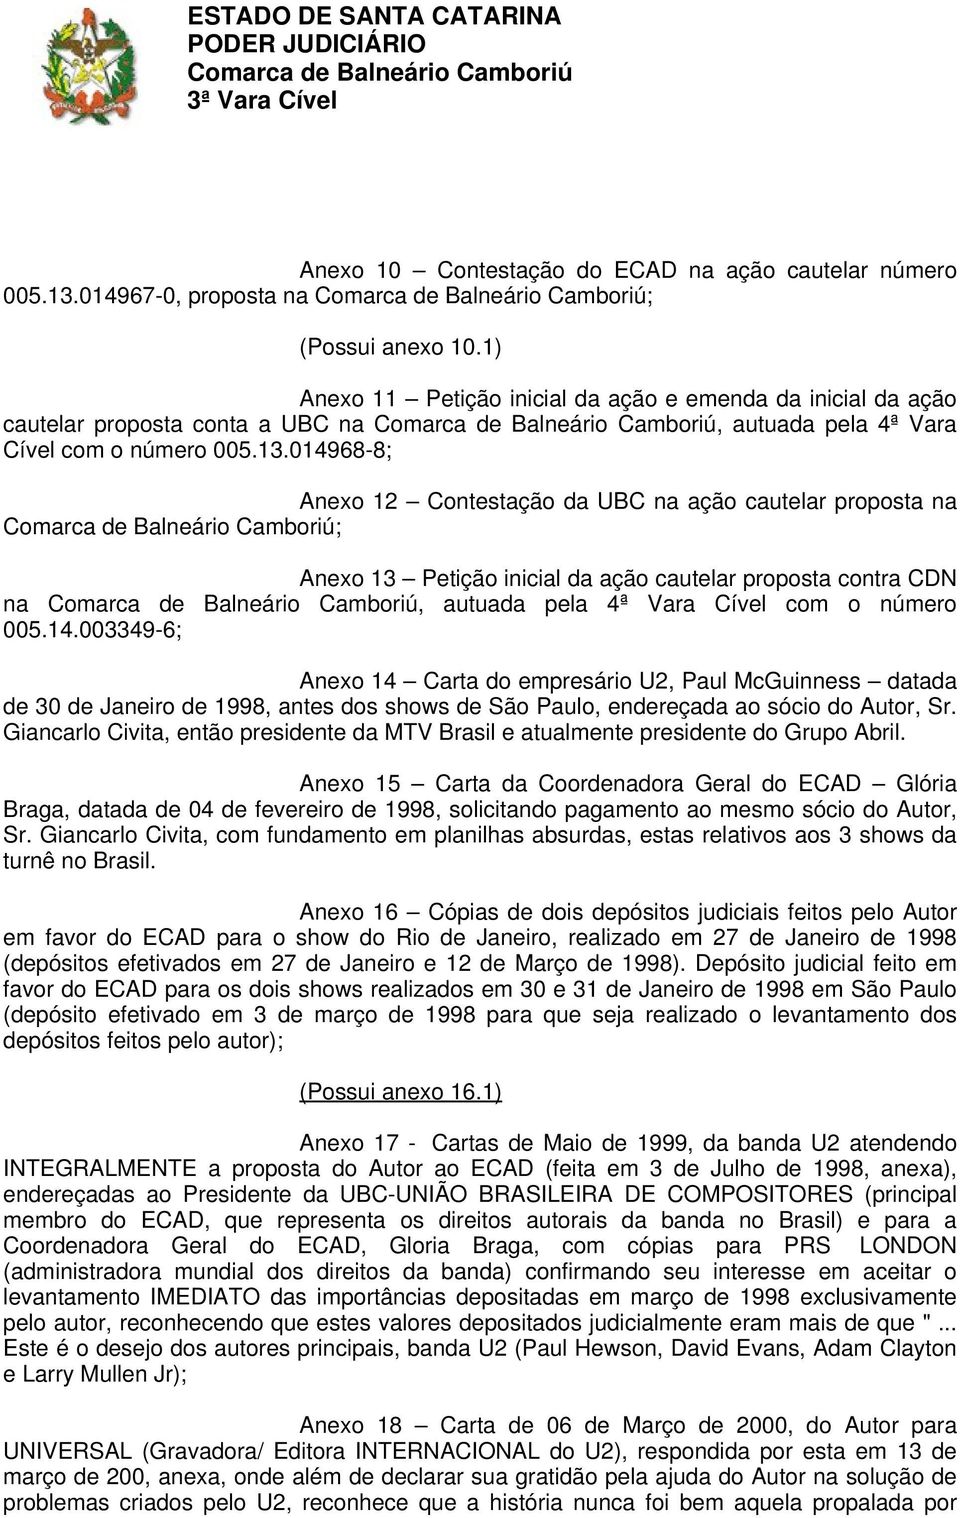 014968-8; Anexo 12 Contestação da UBC na ação cautelar proposta na ; Anexo 13 Petição inicial da ação cautelar proposta contra CDN na, autuada pela 4ª Vara Cível com o número 005.14.003349-6; Anexo 14 Carta do empresário U2, Paul McGuinness datada de 30 de Janeiro de 1998, antes dos shows de São Paulo, endereçada ao sócio do Autor, Sr.